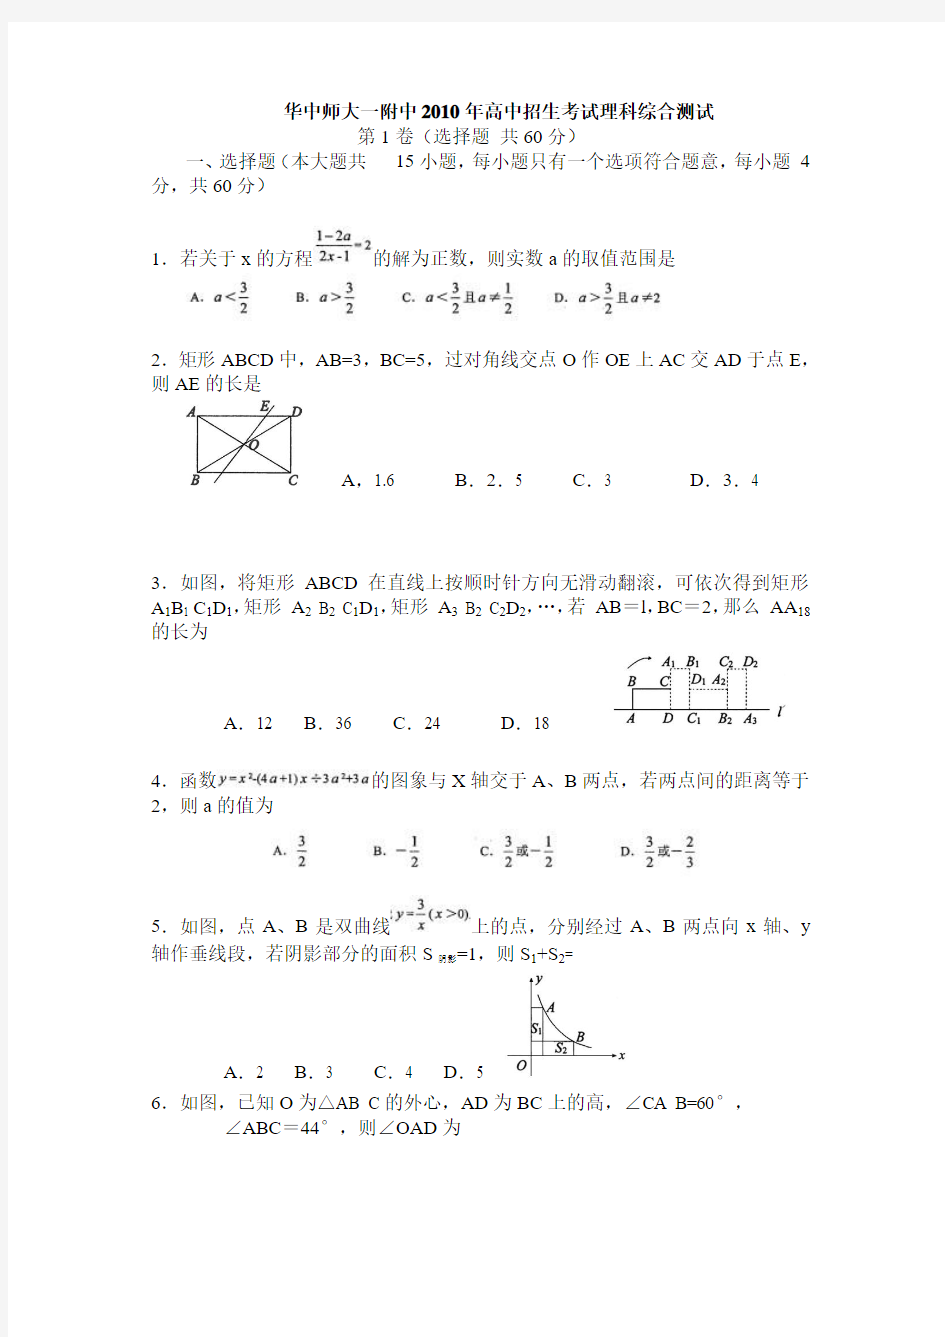 华中师大一附中2010年高中招生考试理科综合测试数学部分(图清晰版)